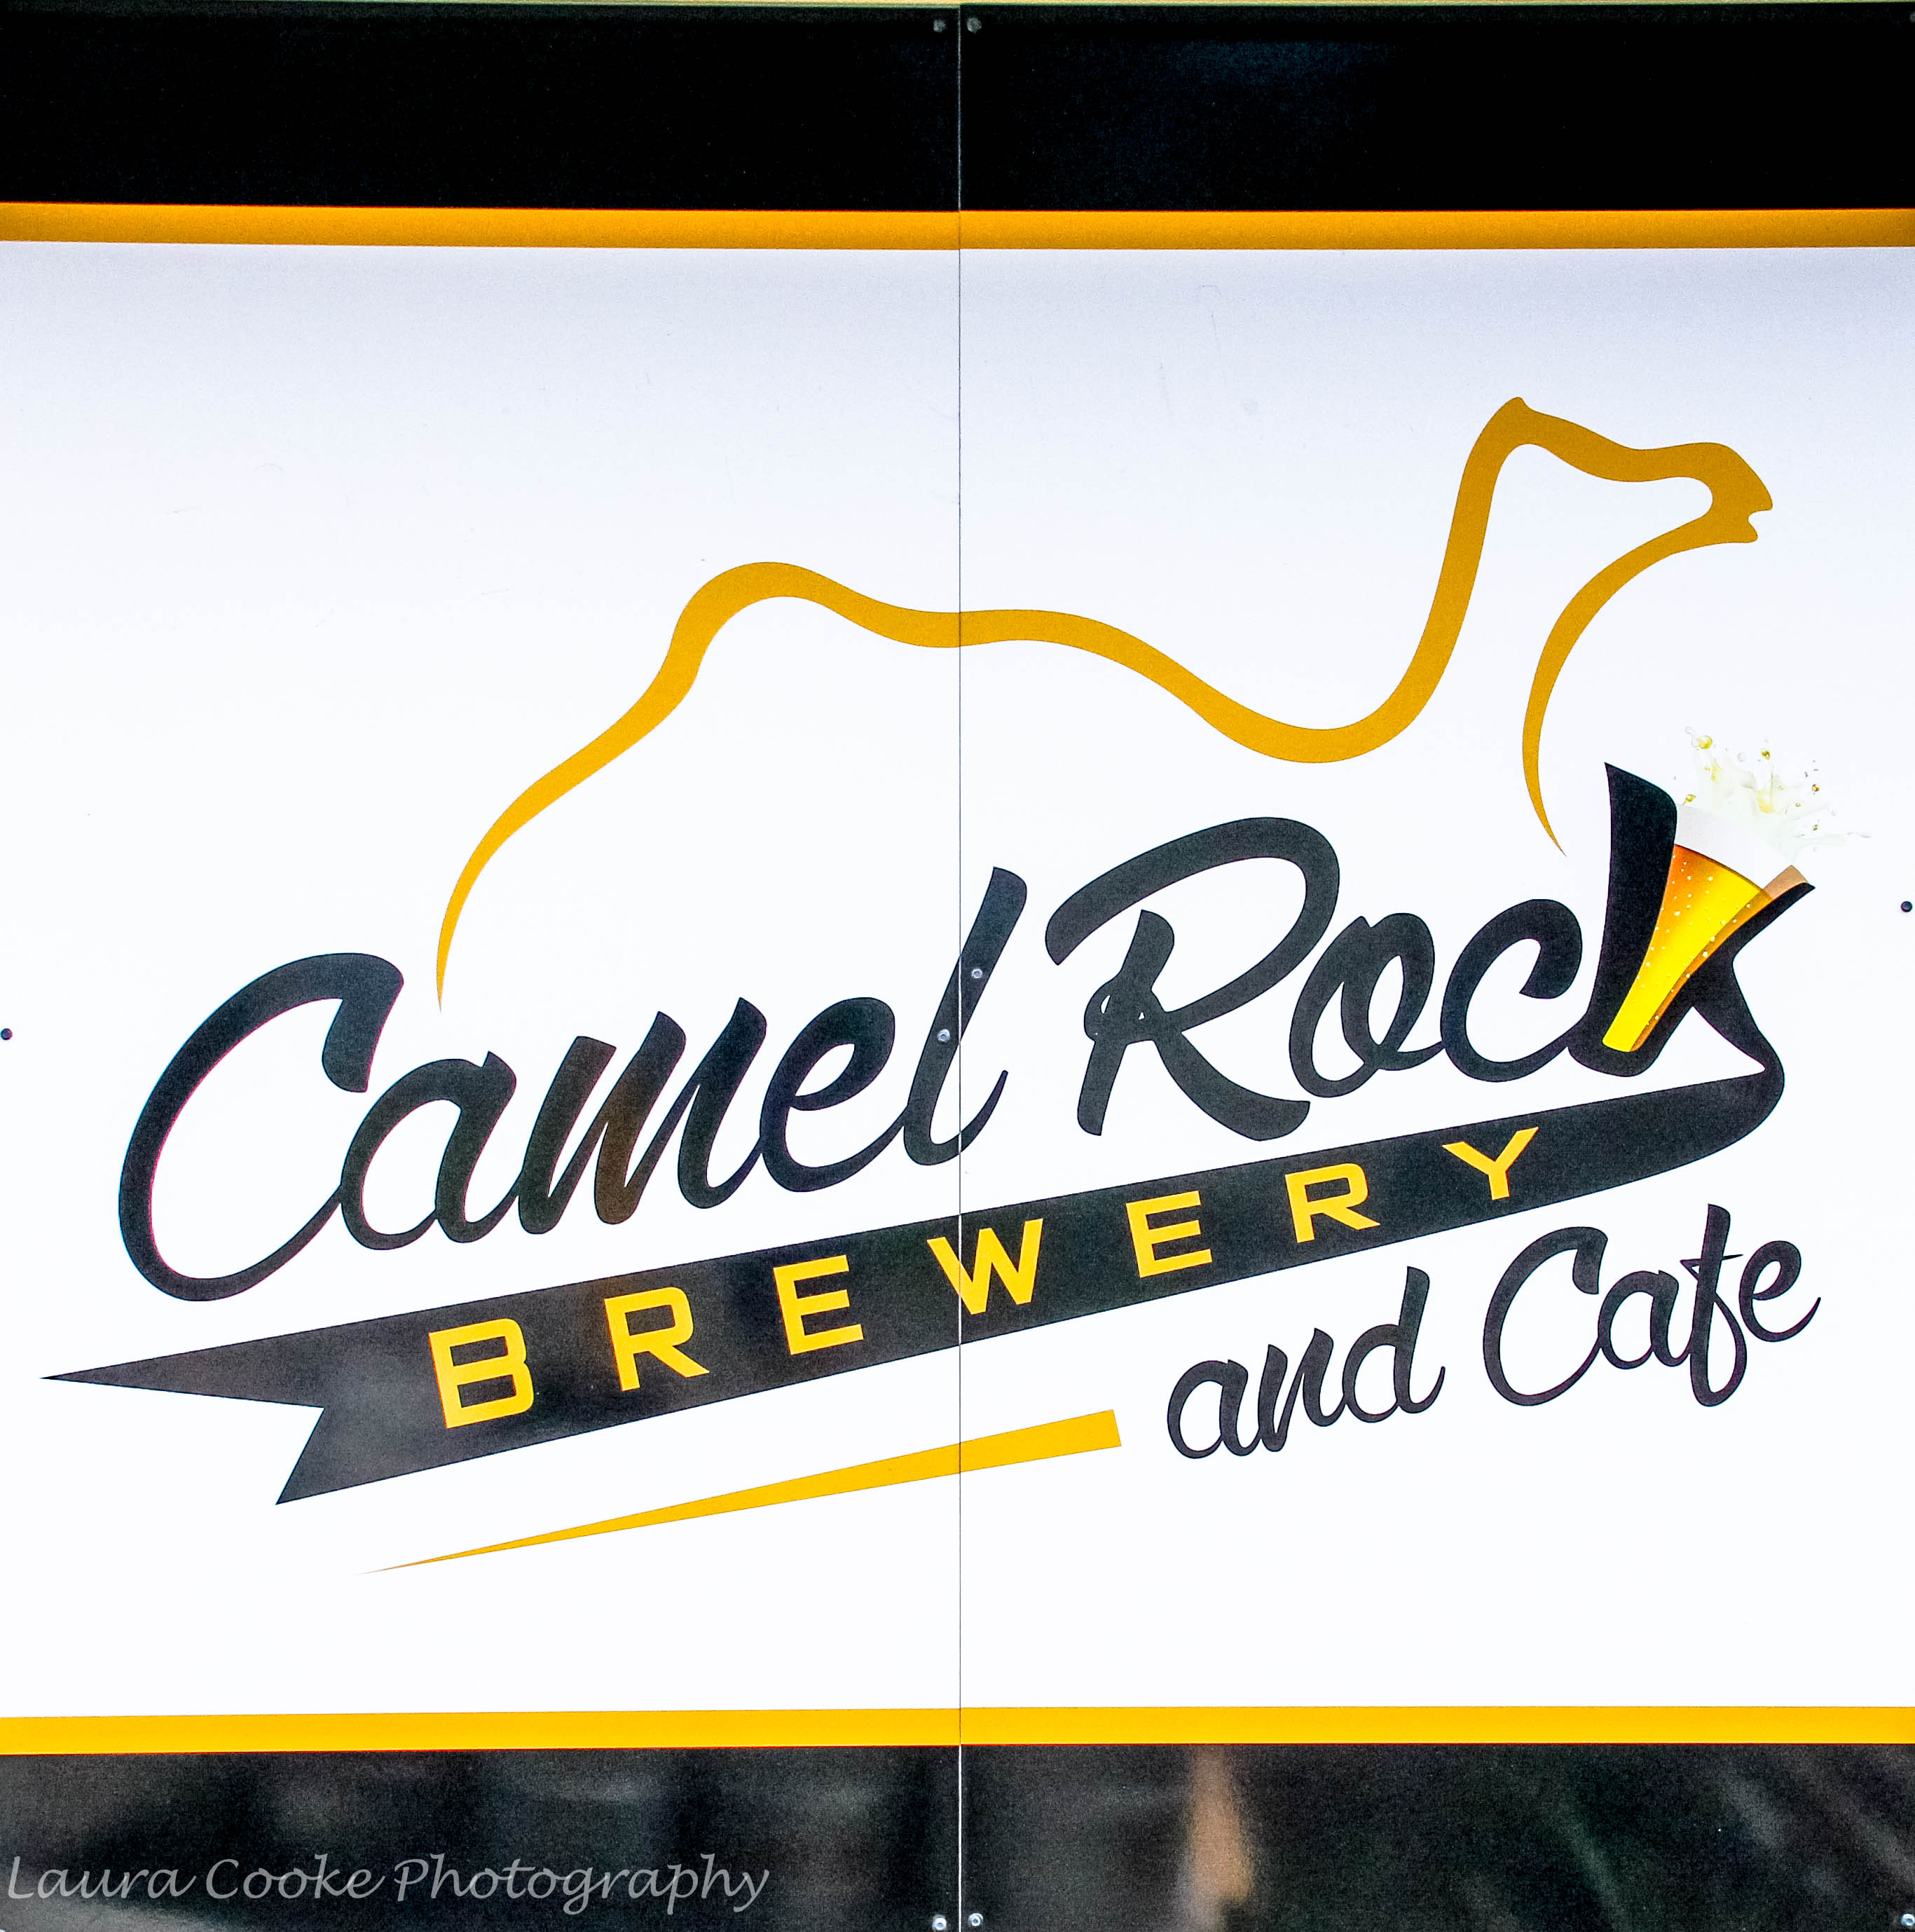 Camel Rock5 - We Love Craft Beer